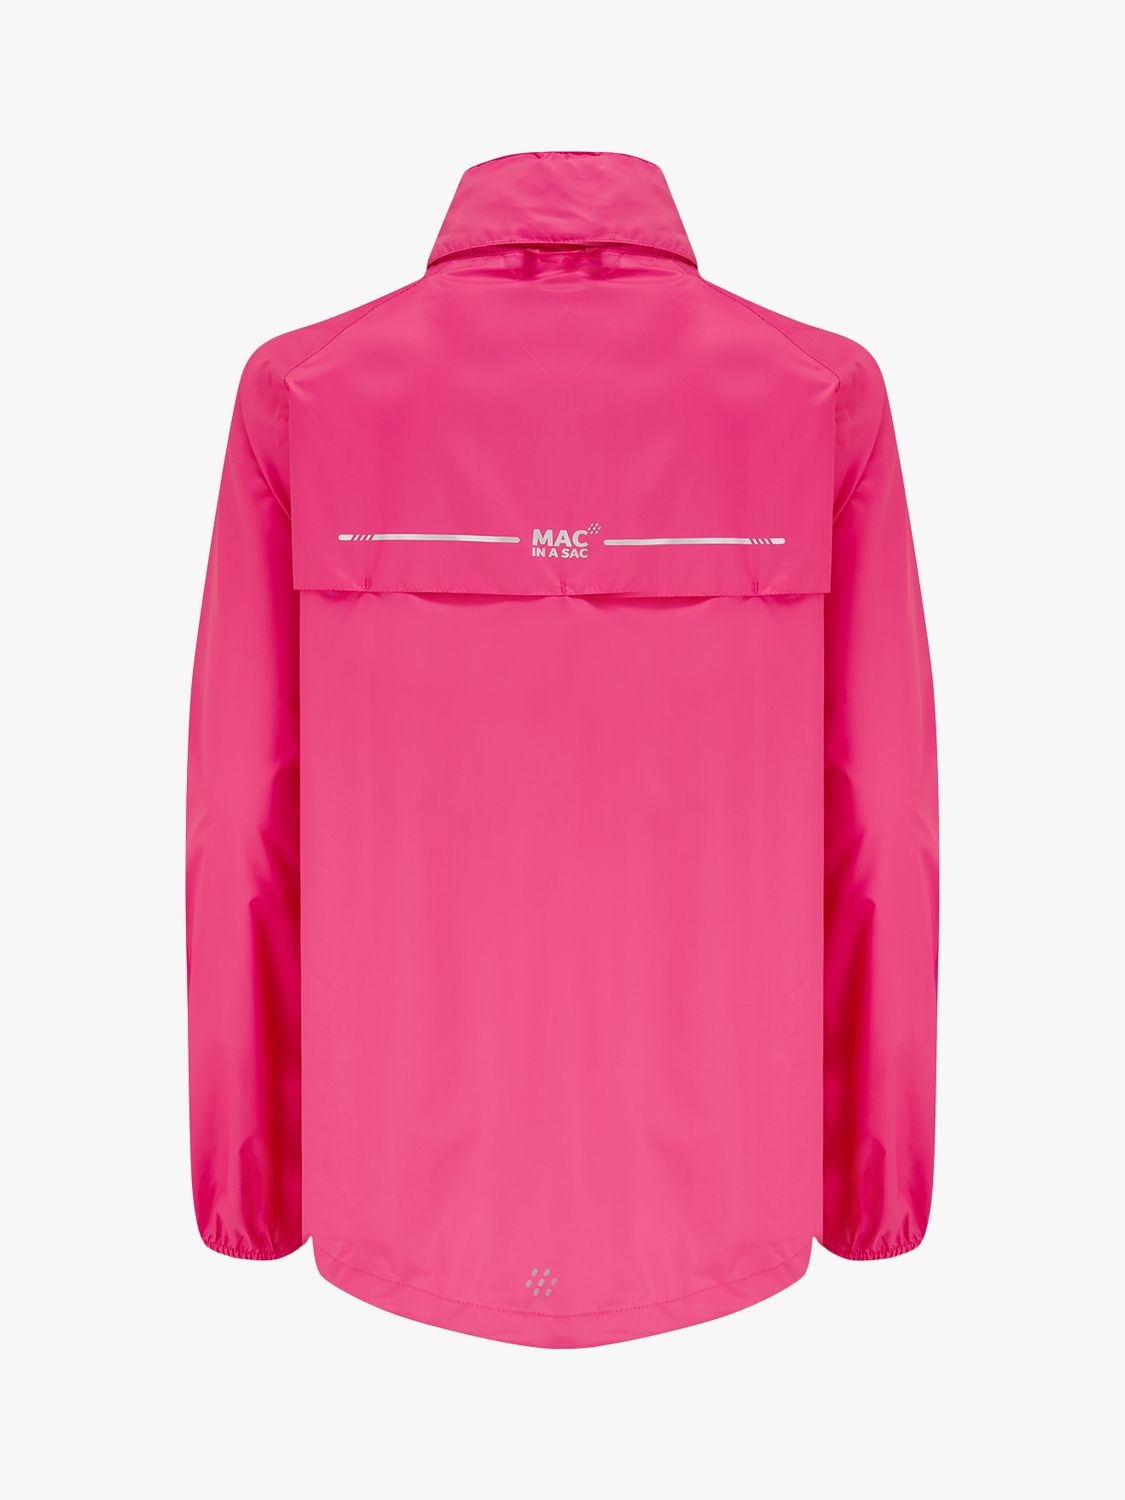 Mac In A Sac Origin II Unisex Packable Waterproof Jacket, Pink, XS